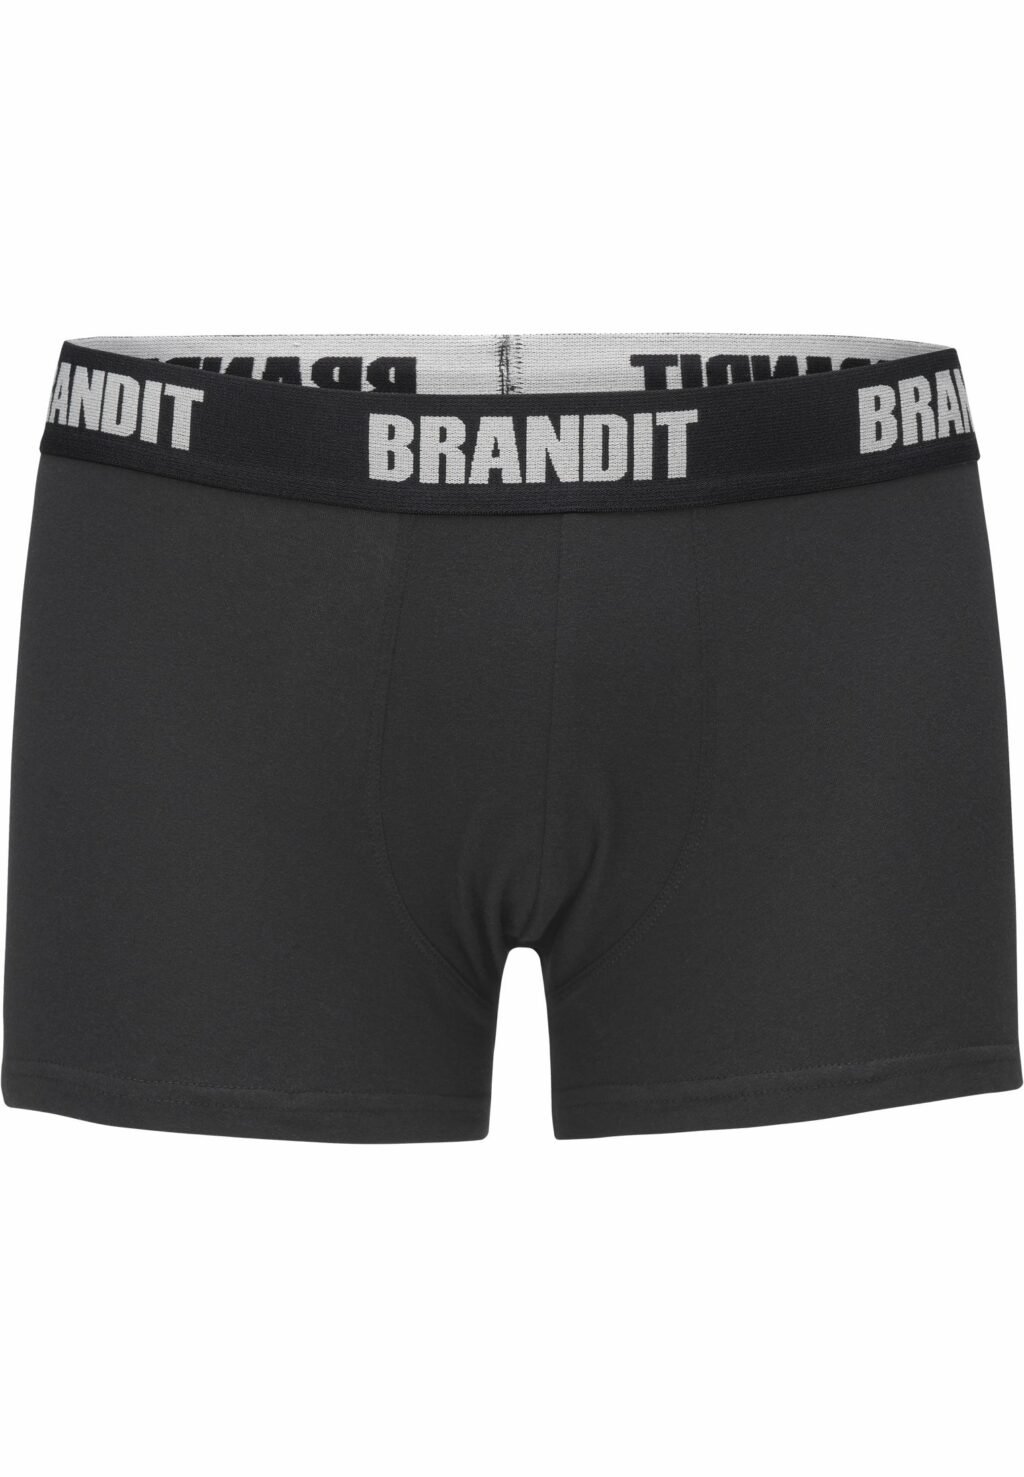 Brandit Boxershorts Logo 2er Pack wht/blk BD4501